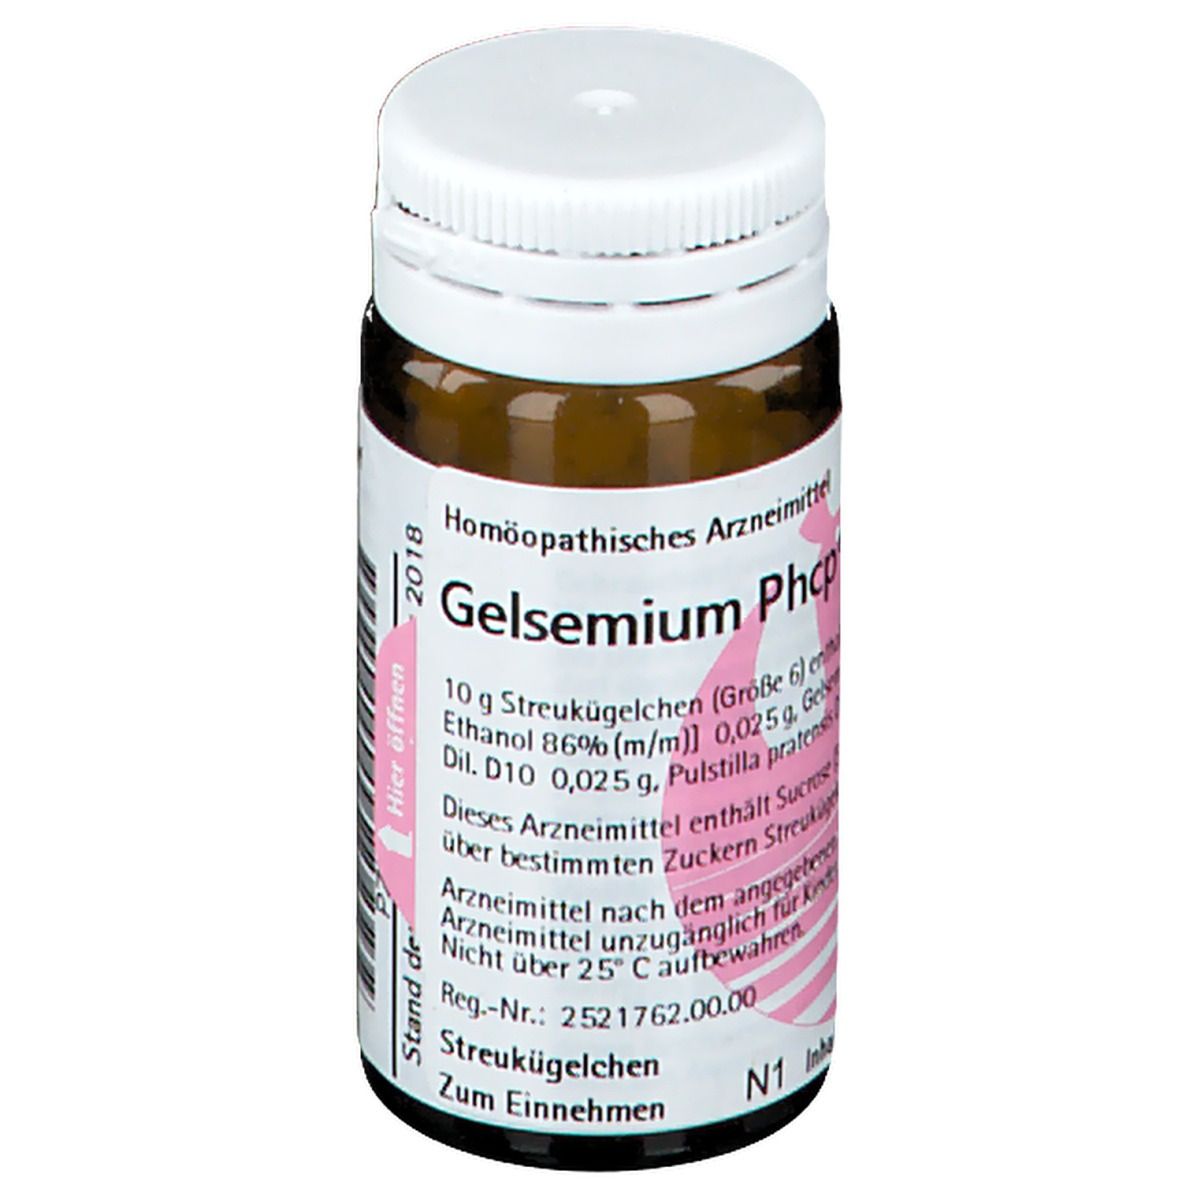 Gelsemium Phcp®